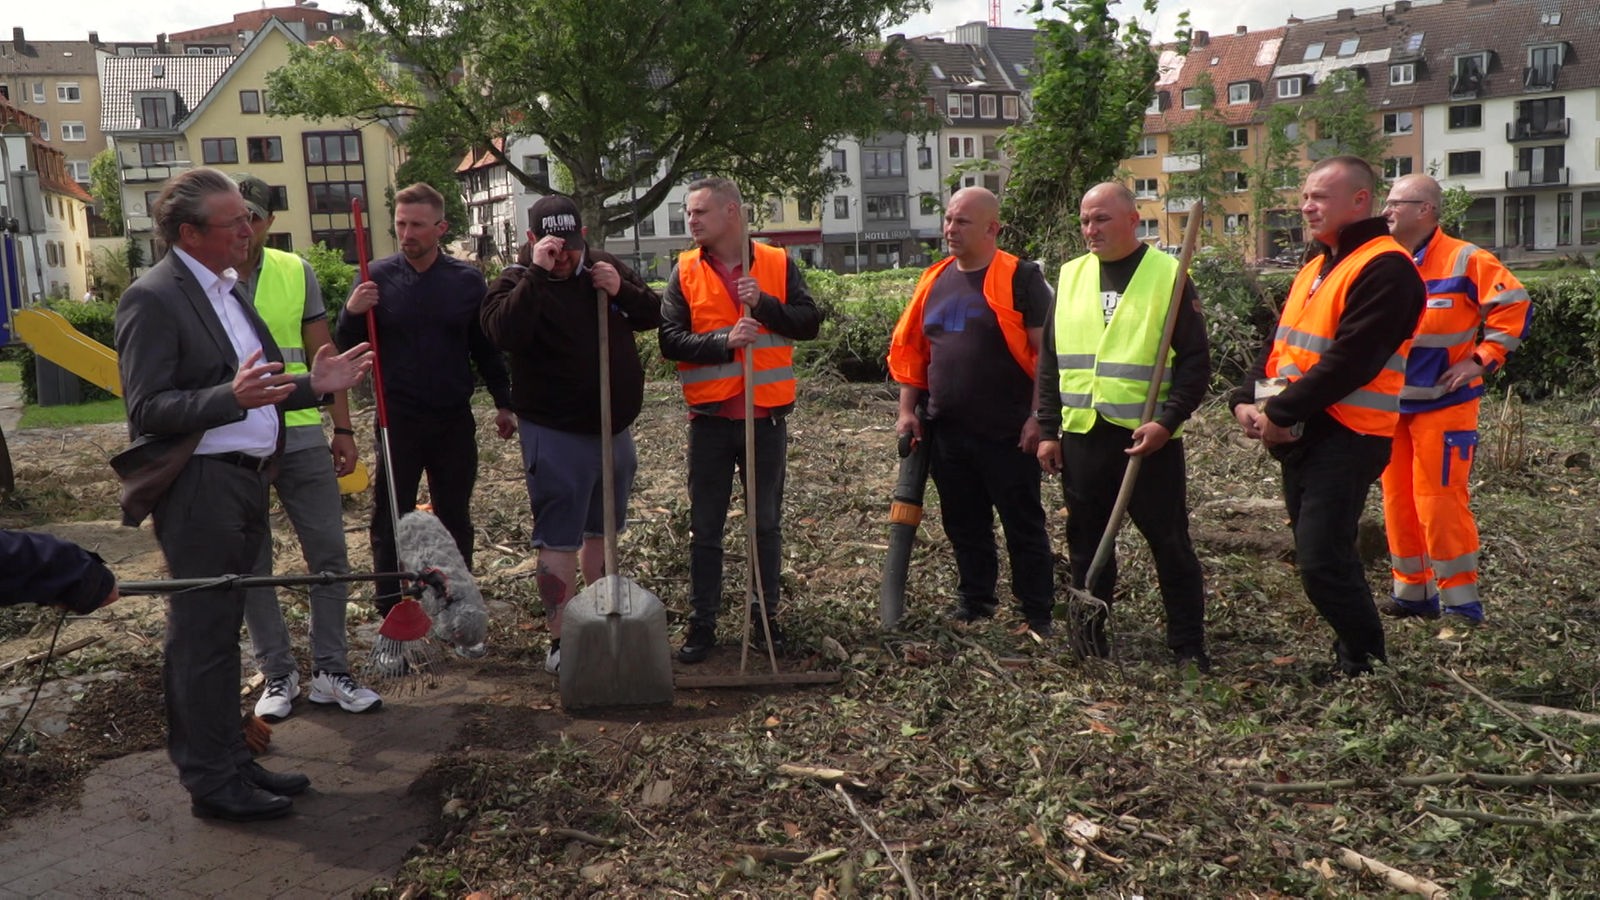 Po tornadzie w Paderborn: Polscy pomocnicy z miast partnerskich sprzątają – Westfalia-Lippe – aktualności